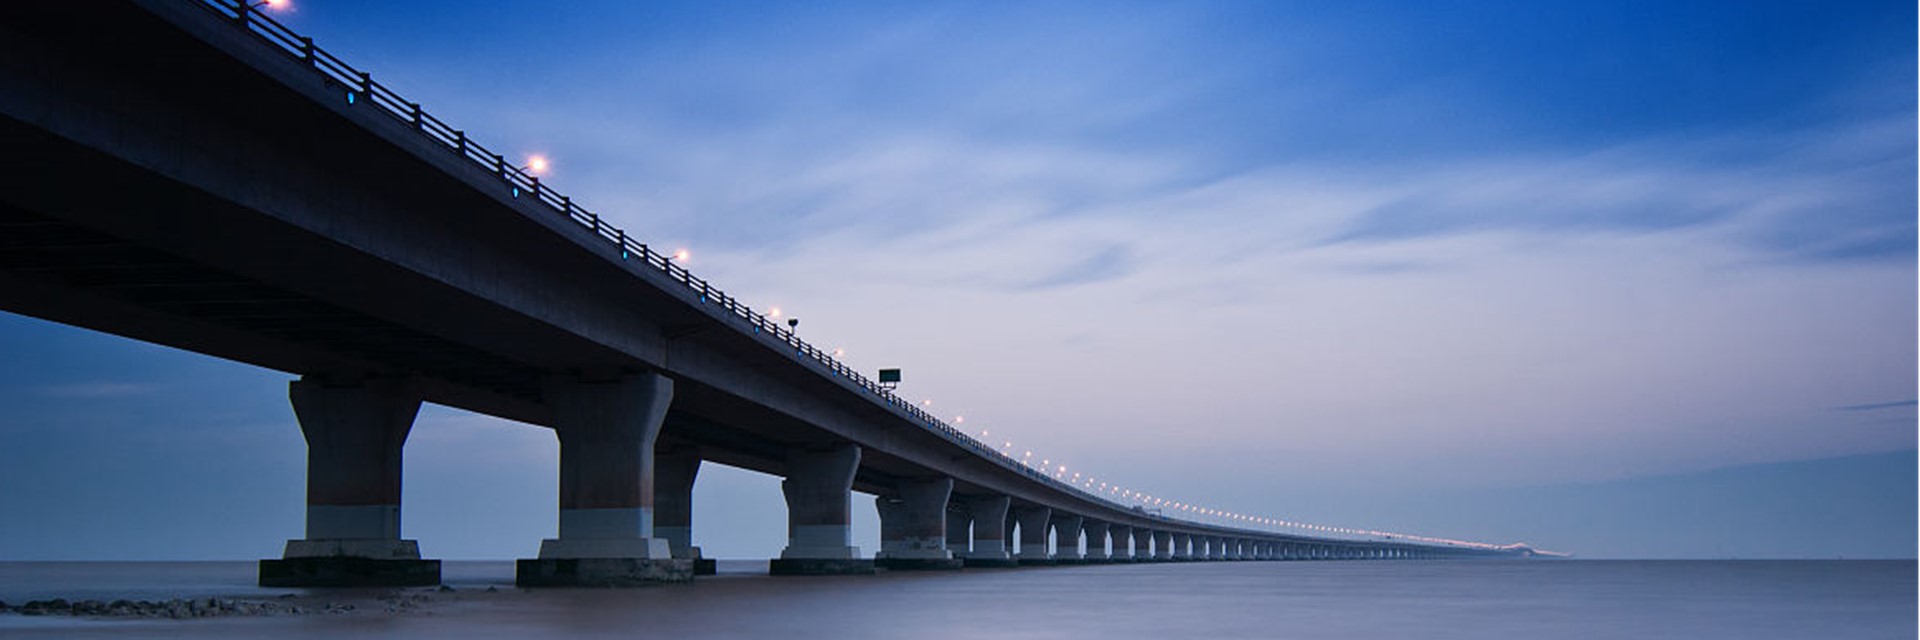 https://chcnav.com/uploads/donghai-bridge-shanghai-china-apache-6-survey-chcnav.jpg